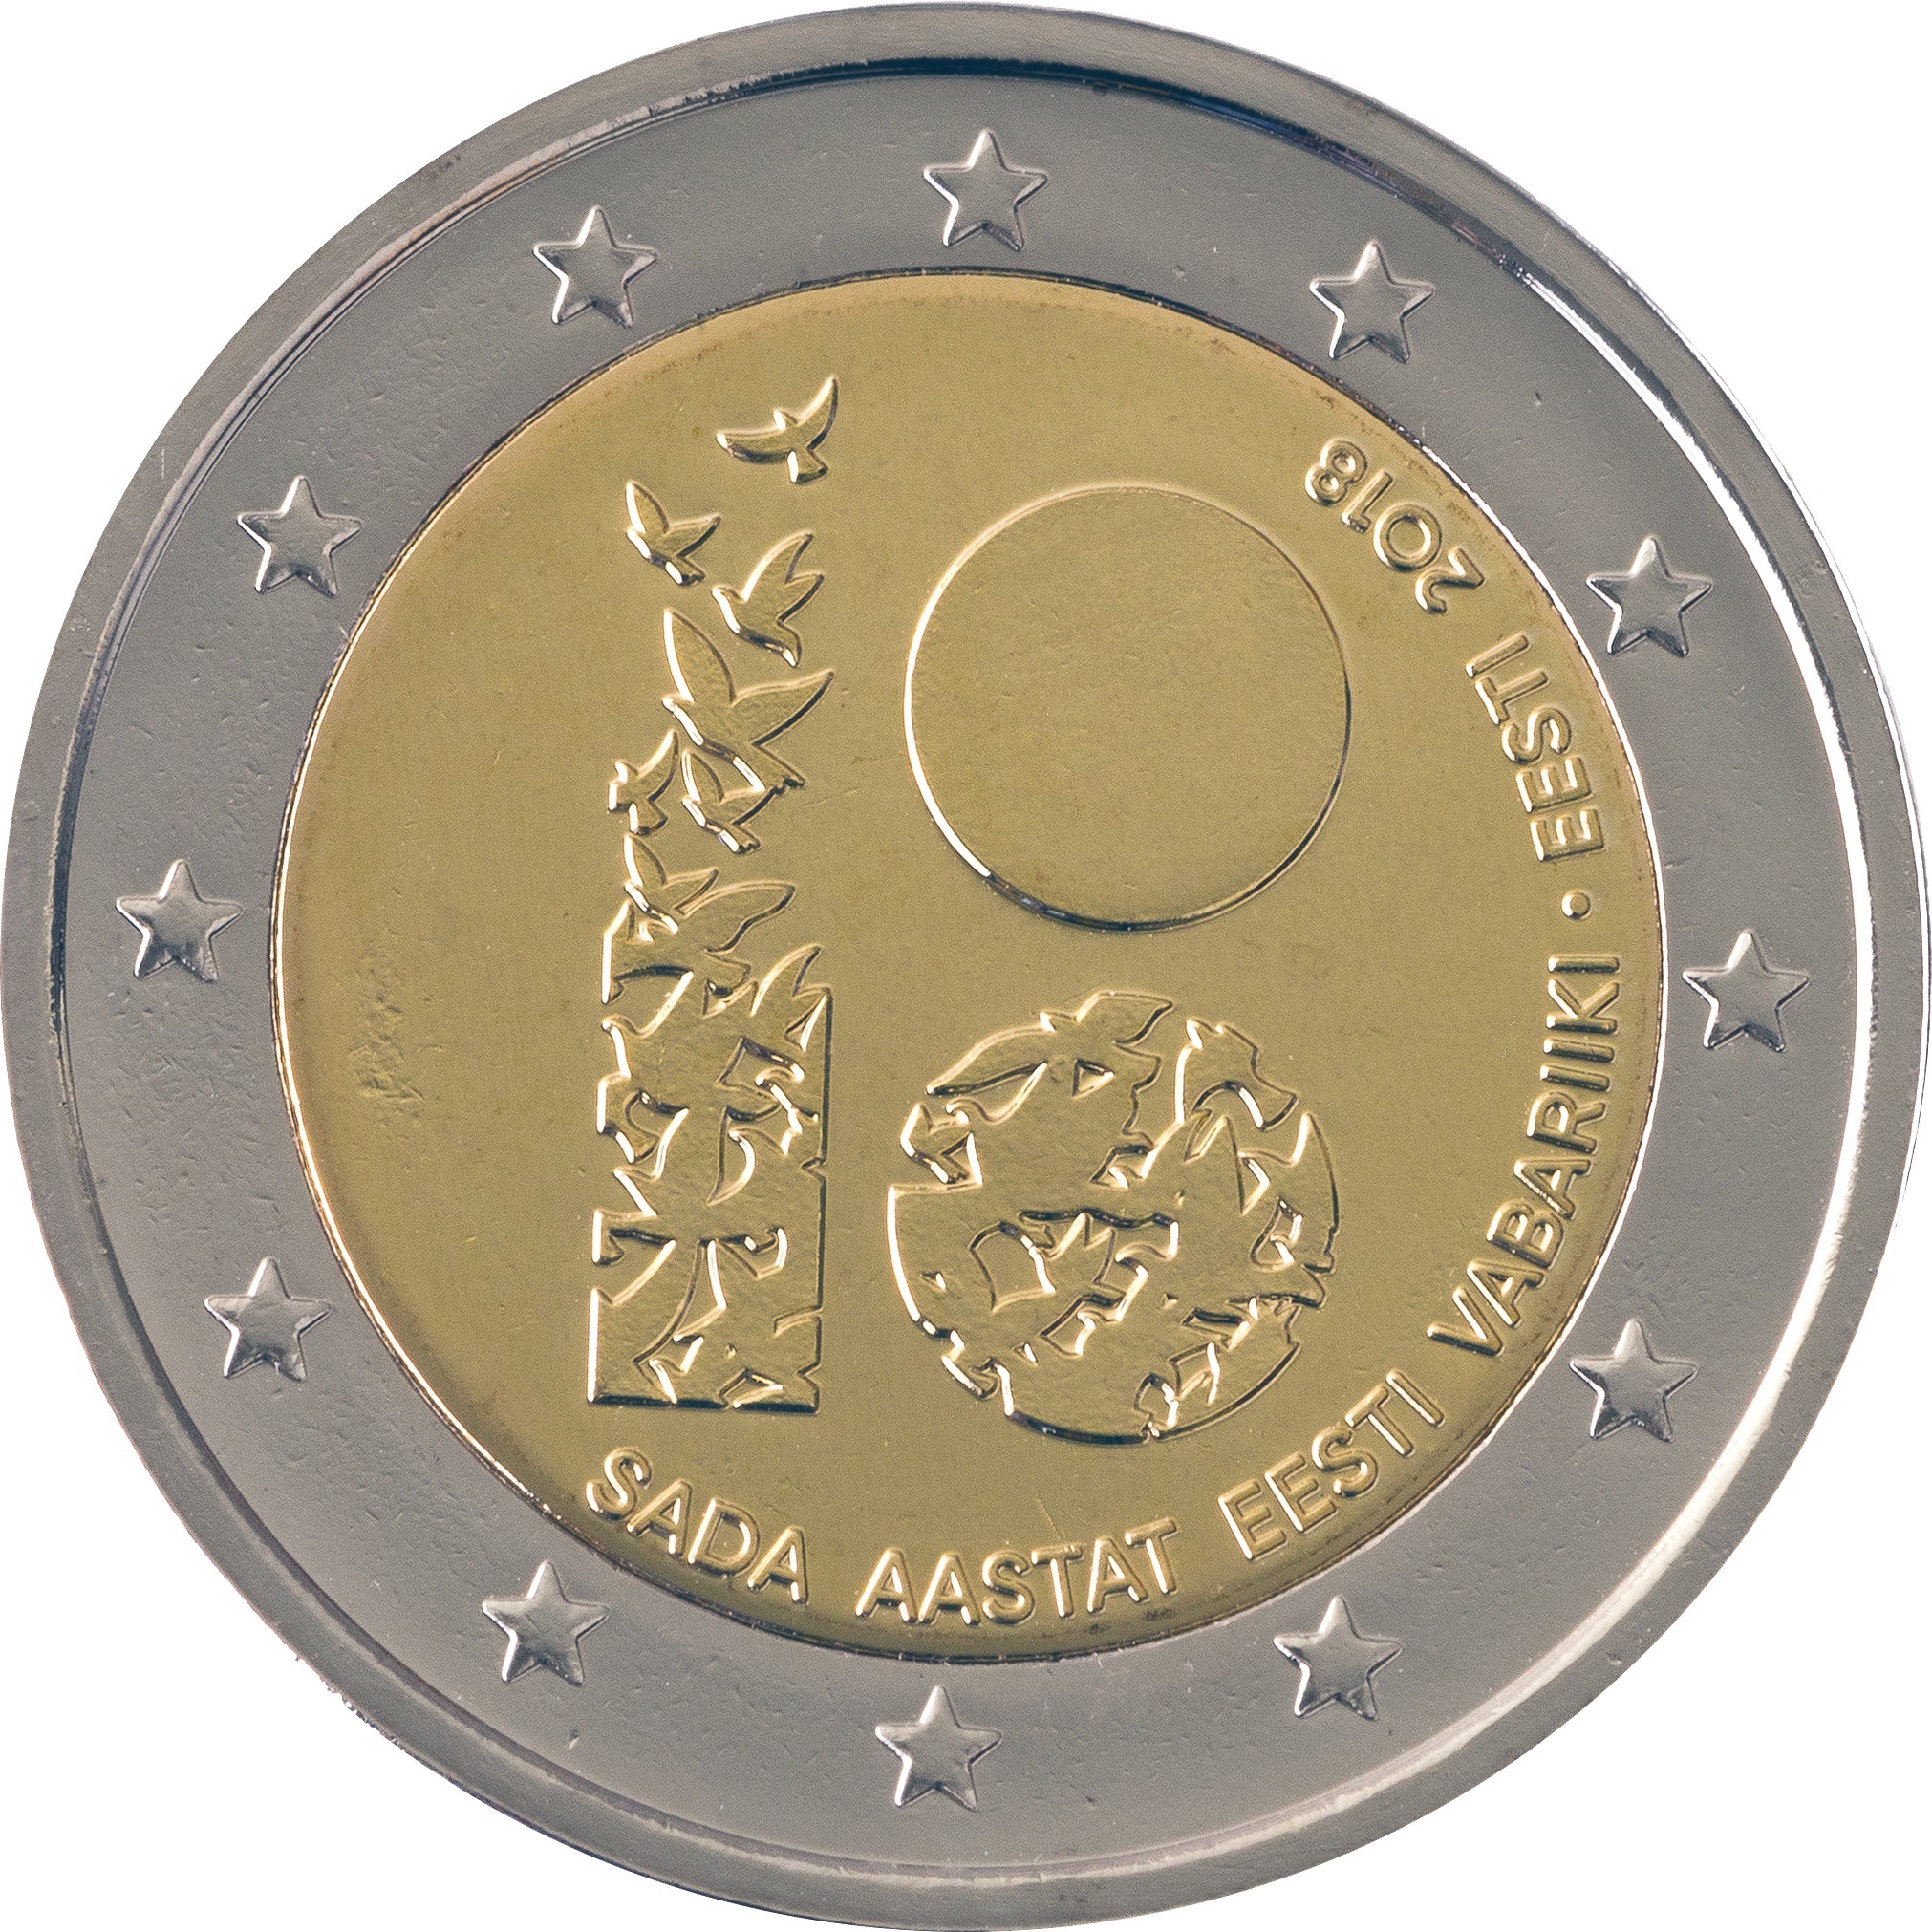 2 € Euro commemorative coin 2018-100th anniversarry of the Austria AUSTRIA 